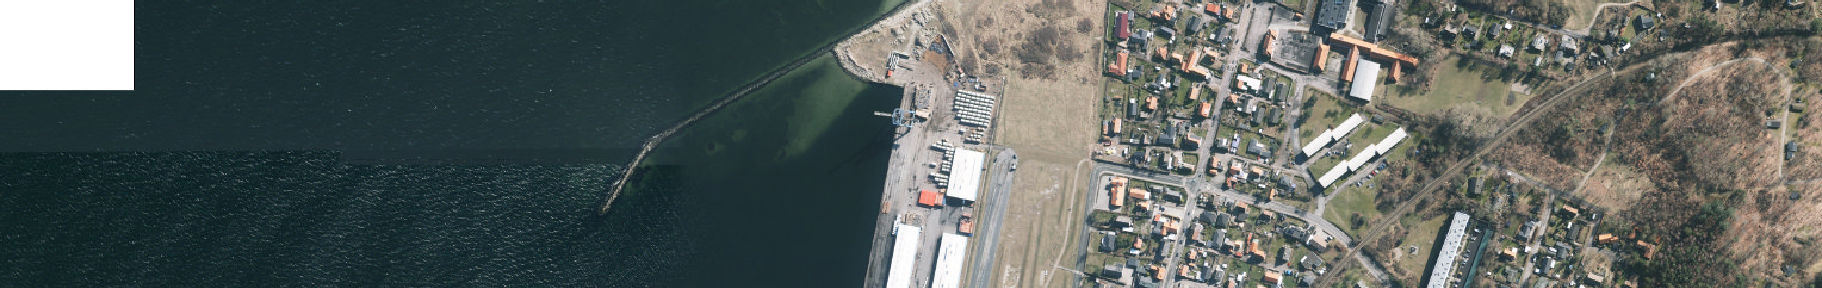 Luftfoto med placering af bypass